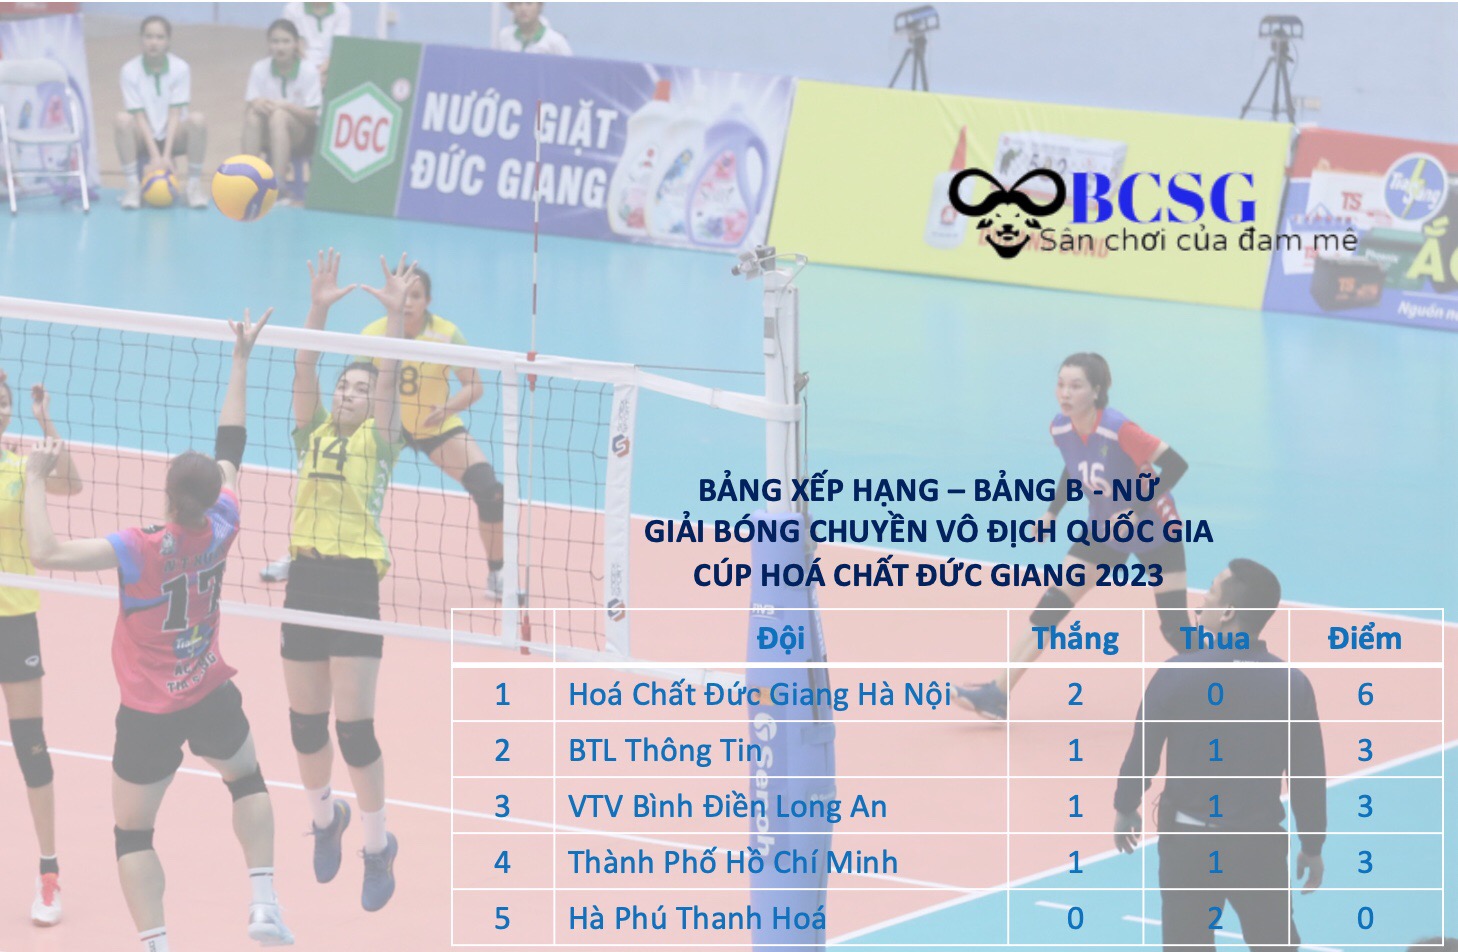 Bảng xếp hạng tạm thời bảng B ở giải VĐQG - Cúp Hóa Chất Đức Giang 2023